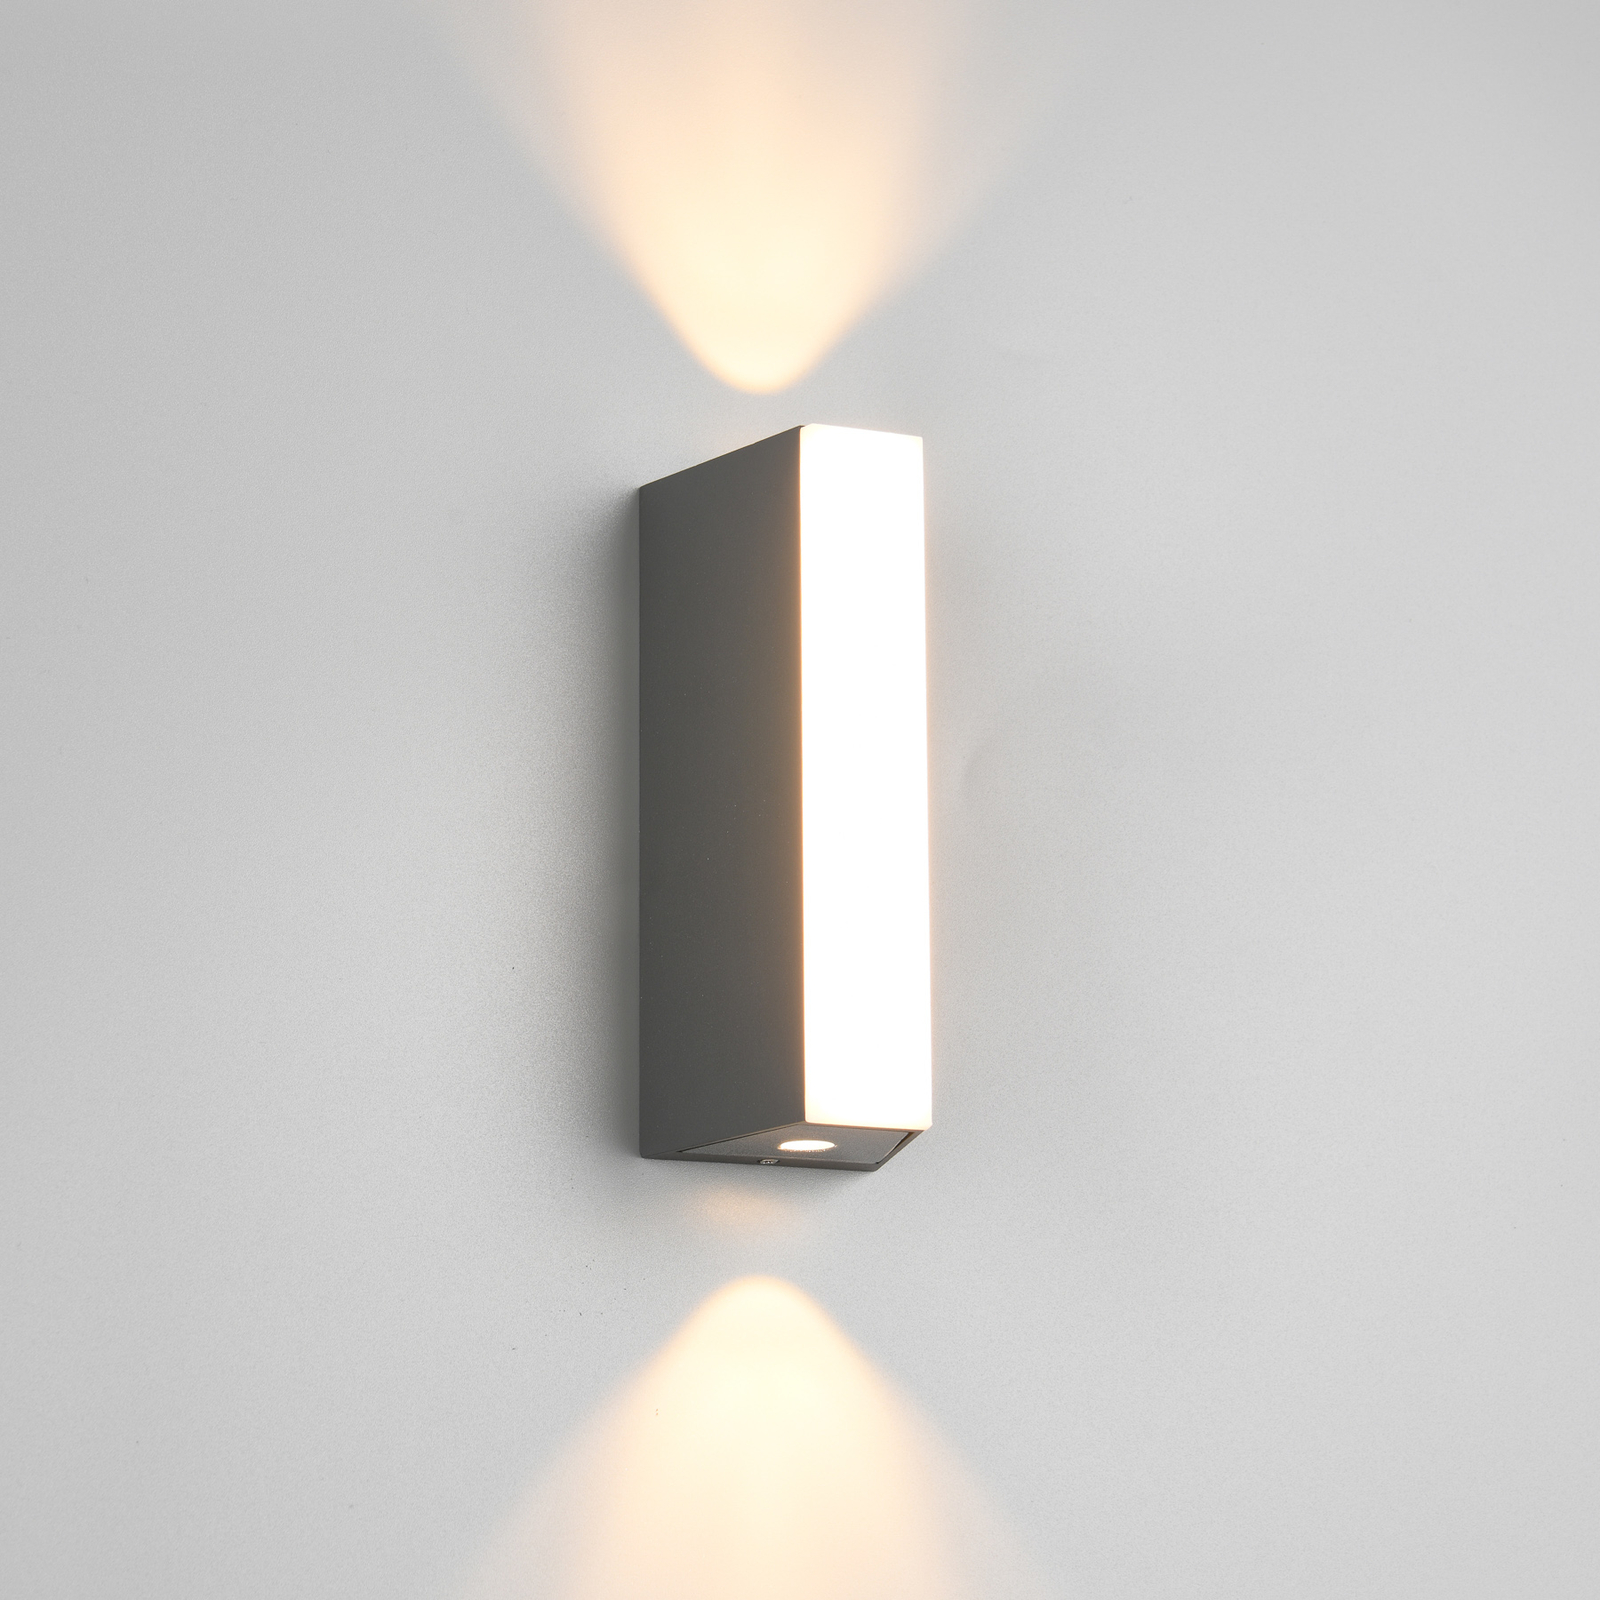 Venkovní nástěnné svítidlo Marne LED, výška 16 cm, svítidlo nahoru a dolů